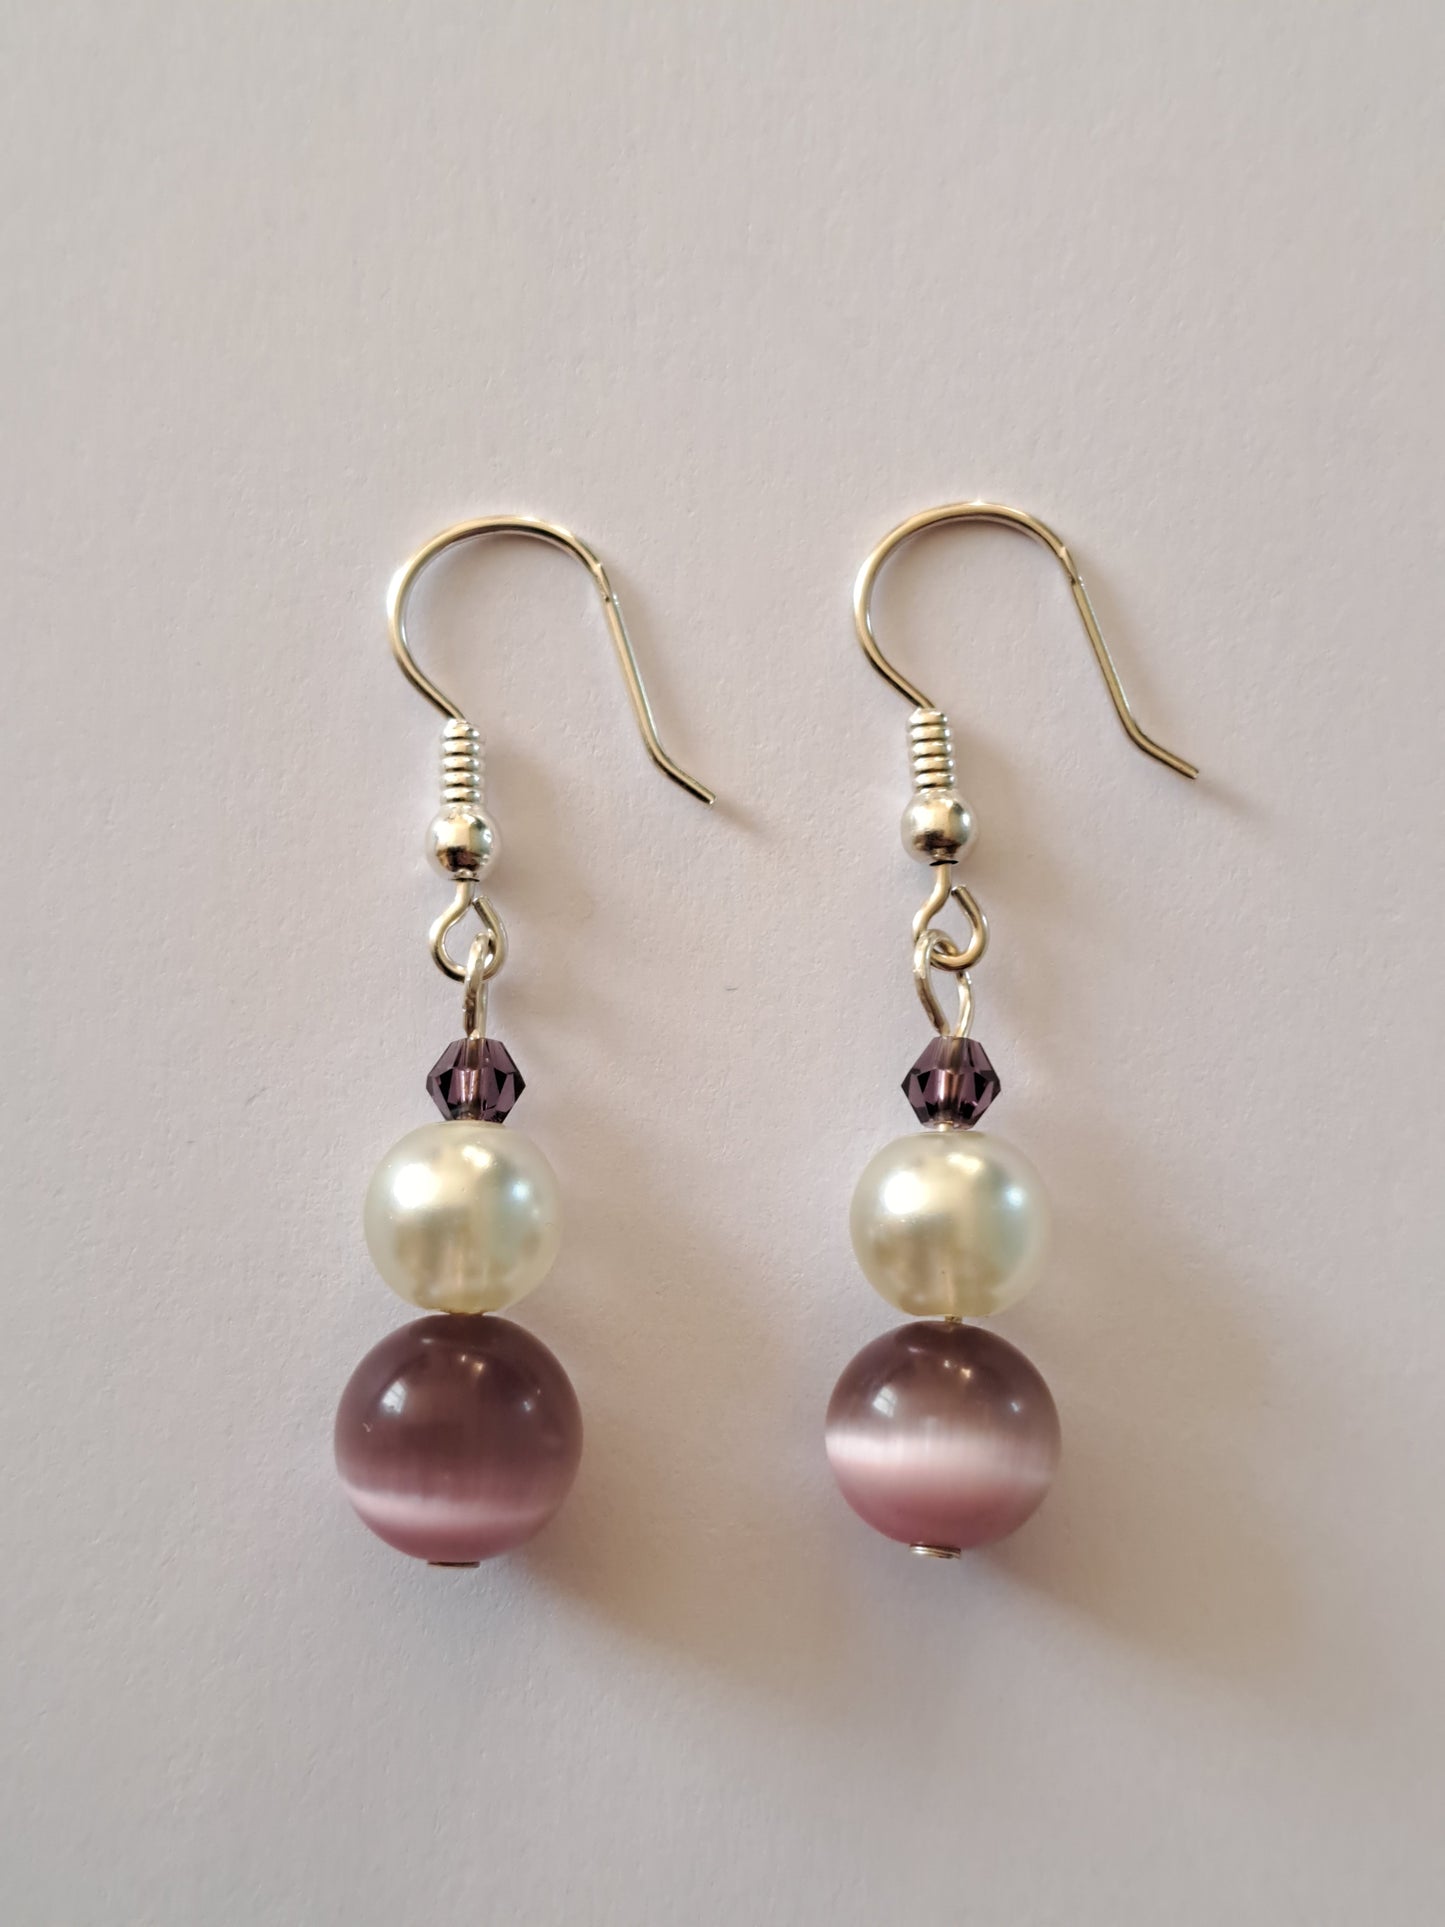 Boucles d'oreilles en argent avec perles blanches et violettes. Site de bijoux en ligne. France